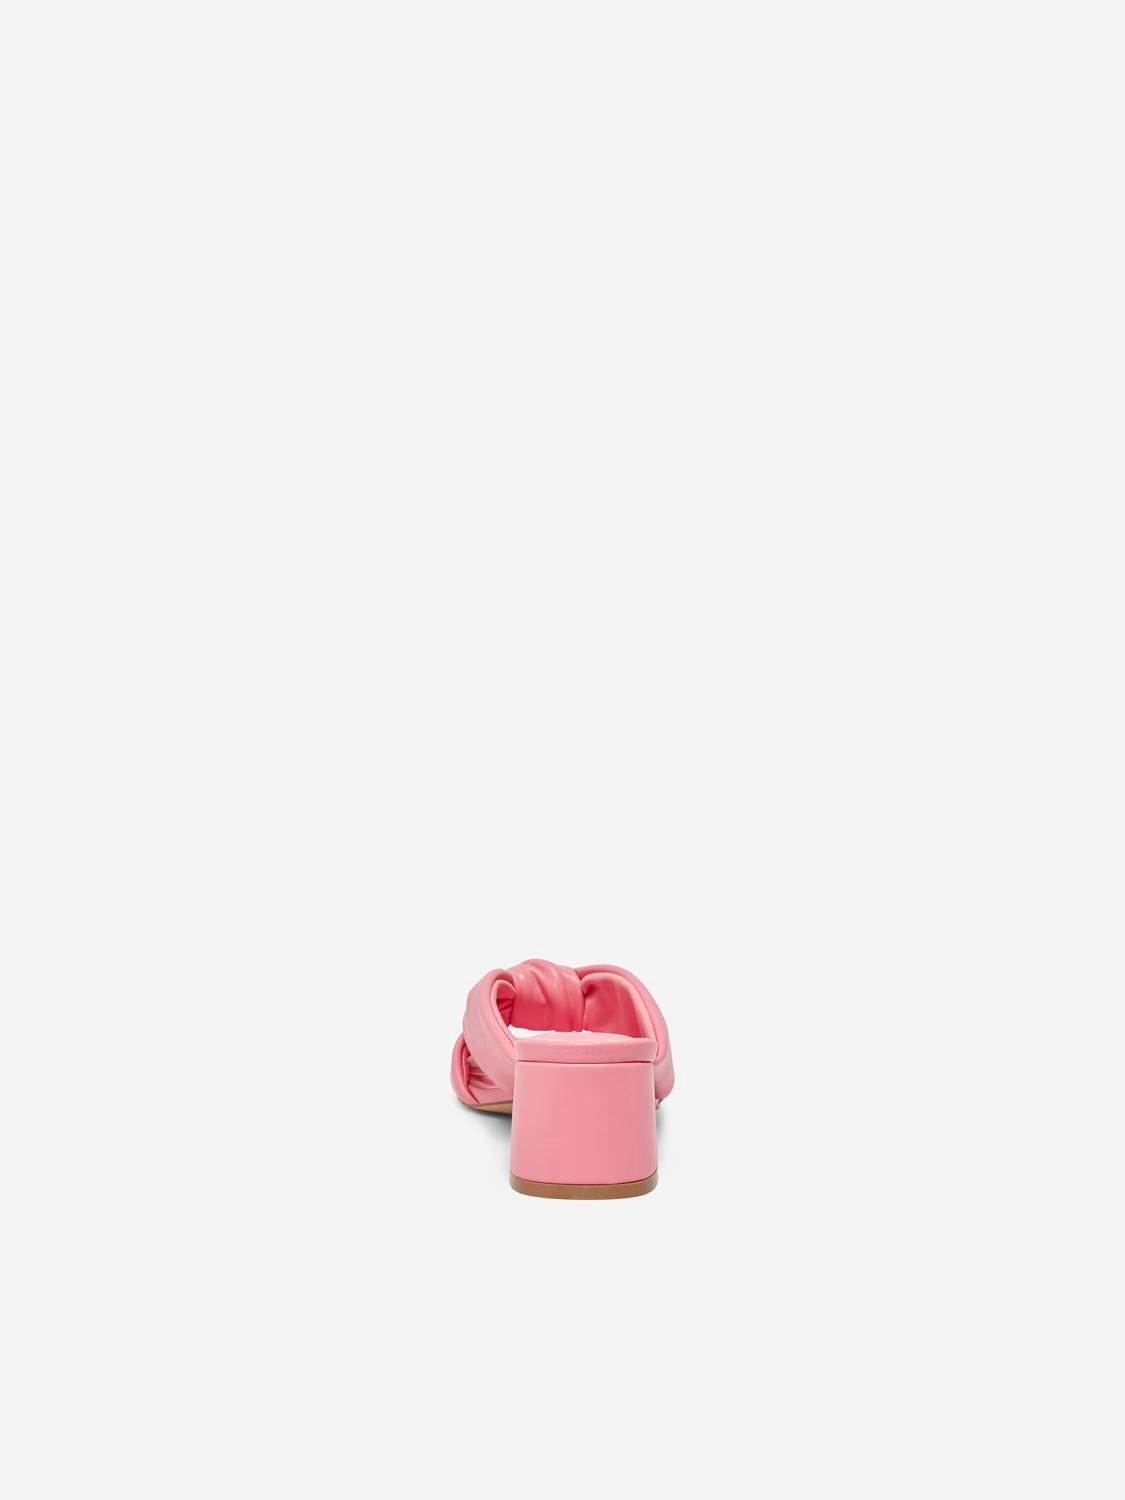 ONLY Slip on Sandal -Pink Carnation - 15281372